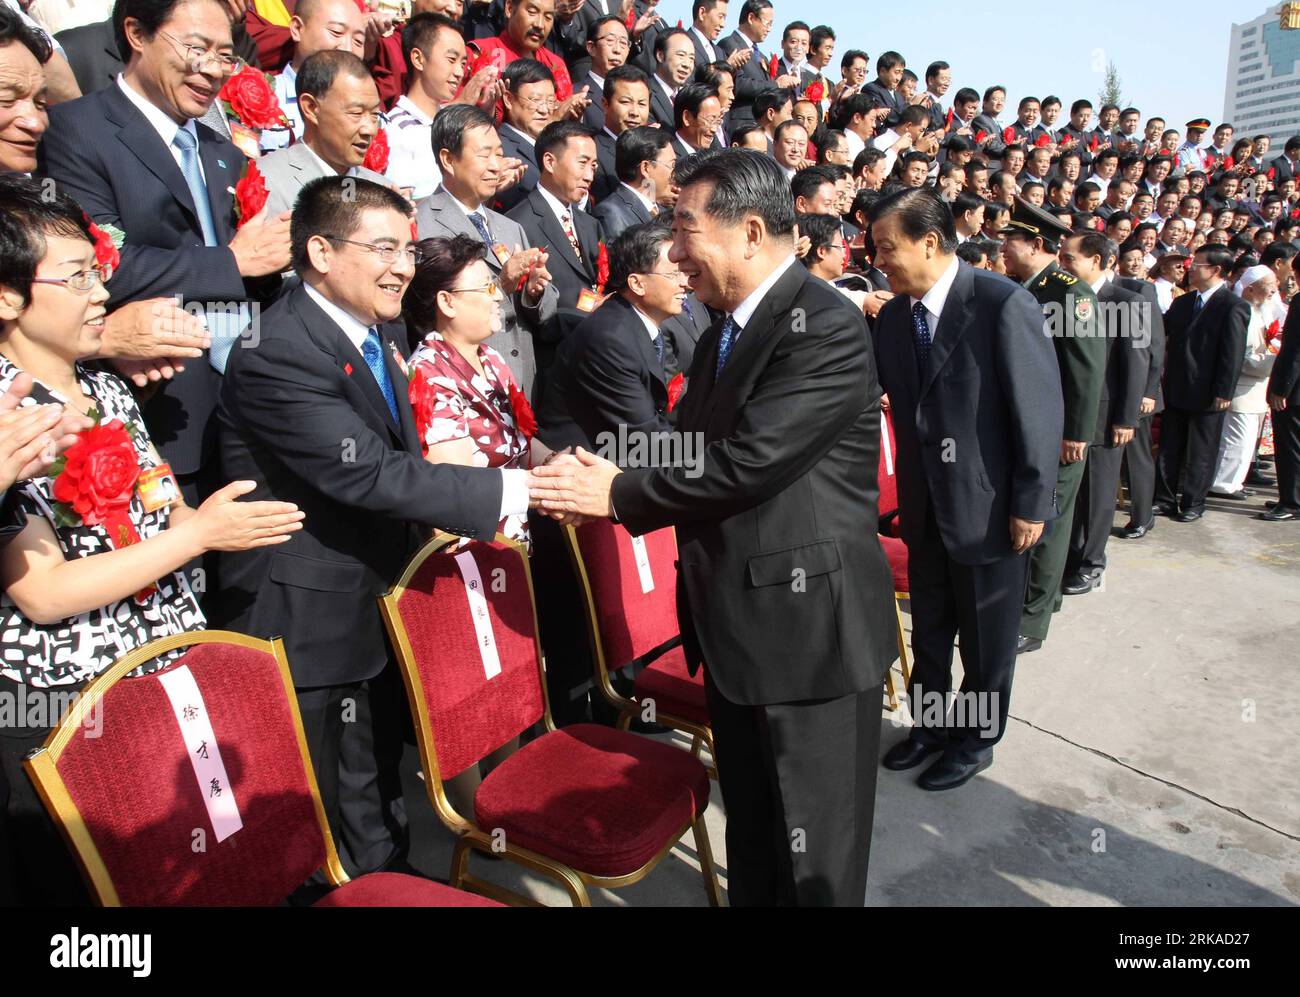 Bildnummer: 54320171 Datum: 19.08.2010 Copyright: imago/Xinhua (100819) -- XINING, 19. August 2010 (Xinhua) -- der chinesische Vize-Premier Hui Liangyu schüttelt die Hände mit Delegierten vor einer Konferenz, die gemeinsam vom Zentralkomitee der Kommunistischen Partei Chinas (CPC), dem Staatsrat und der Zentralen Militärkommission der KPCh abgehalten wird, zu Ehren von Hilfskräften und Rettungskräften in Beben- und Katastrophengebieten rund um China, in Xining, der Hauptstadt der nordwestchinesischen Provinz Qinghai, 19. August 2010. (Xinhua/Fan Rujun)(wyo) CHINA-XINING-HONOR KONFERENZ-KATASTROPHENHILFE-HUI LIANGYU (CN) PUBLICATIONxNOTxINxCHN Politik People kbd Stockfoto